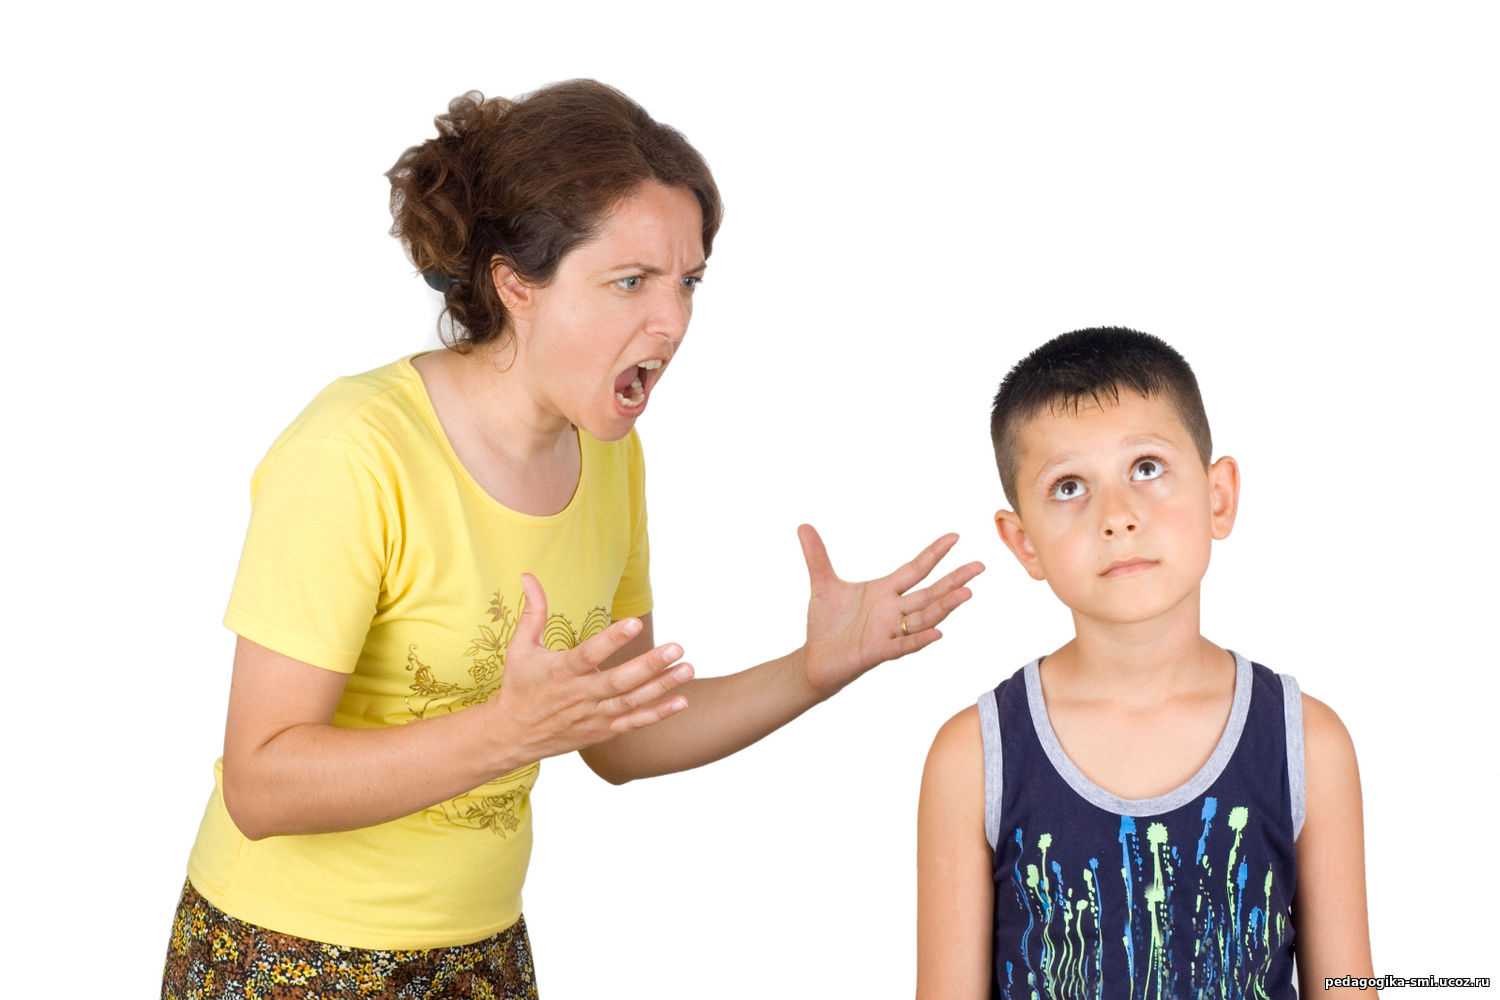 ☀ не слушается ☀ ребенок 6 лет - что делать родителям ☀